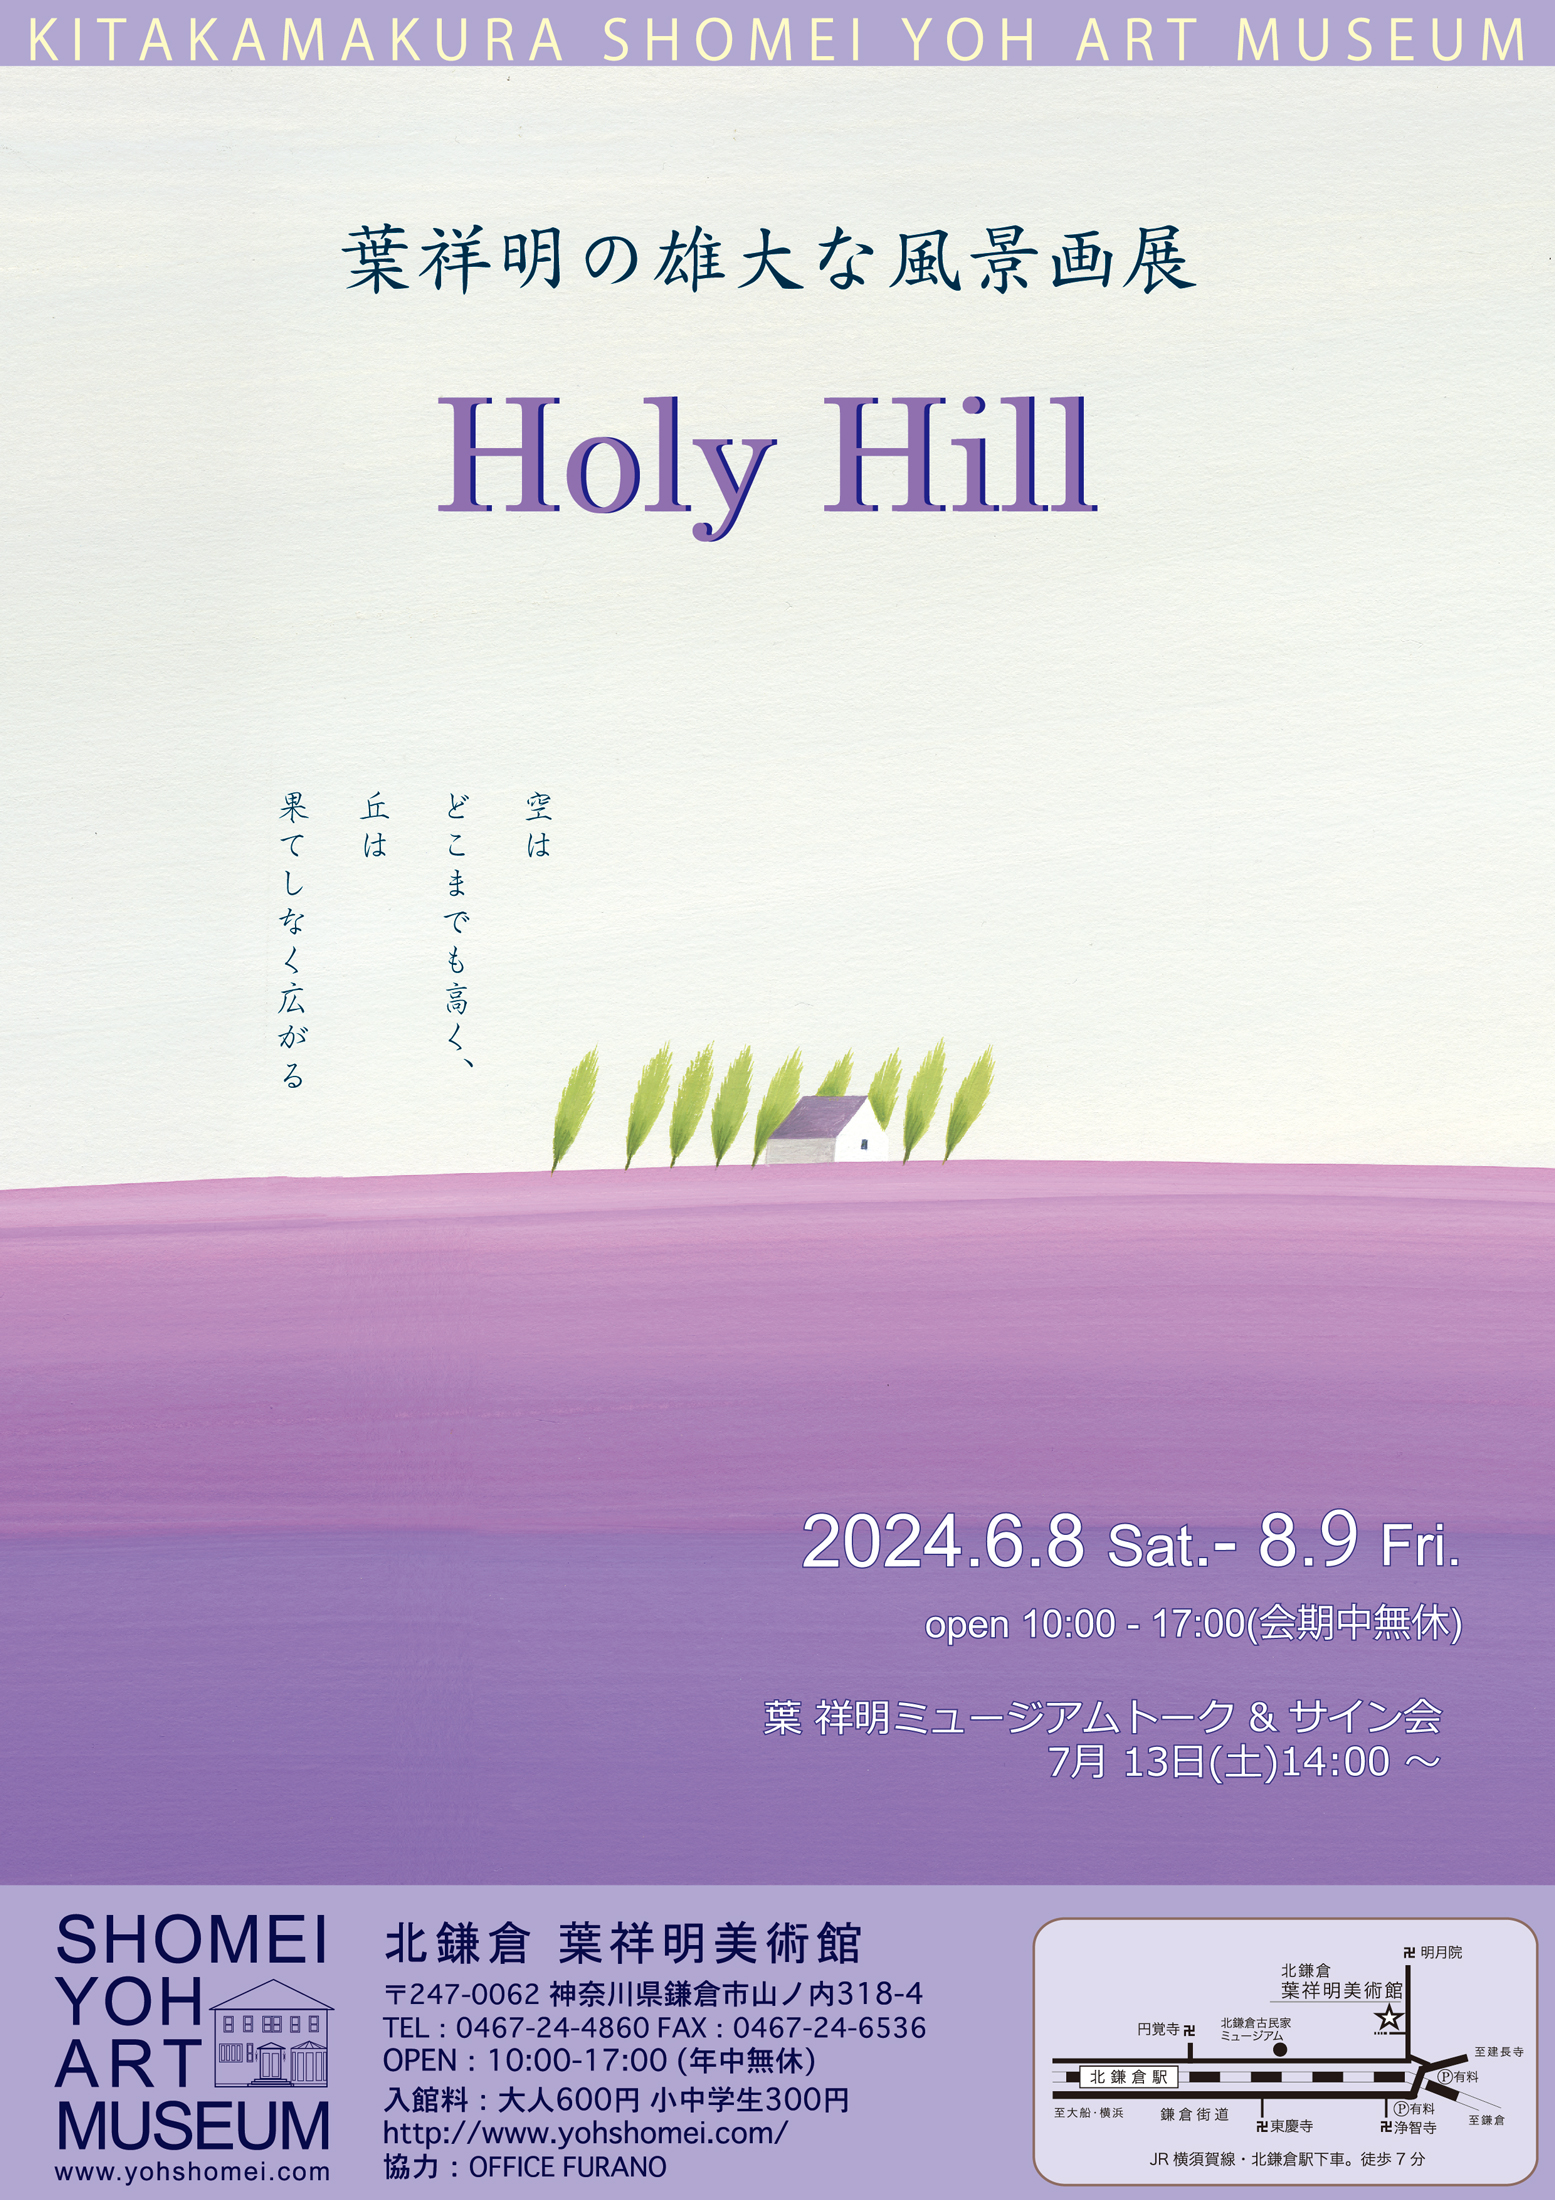 葉祥明の雄大な風景画展「Holy Hill」